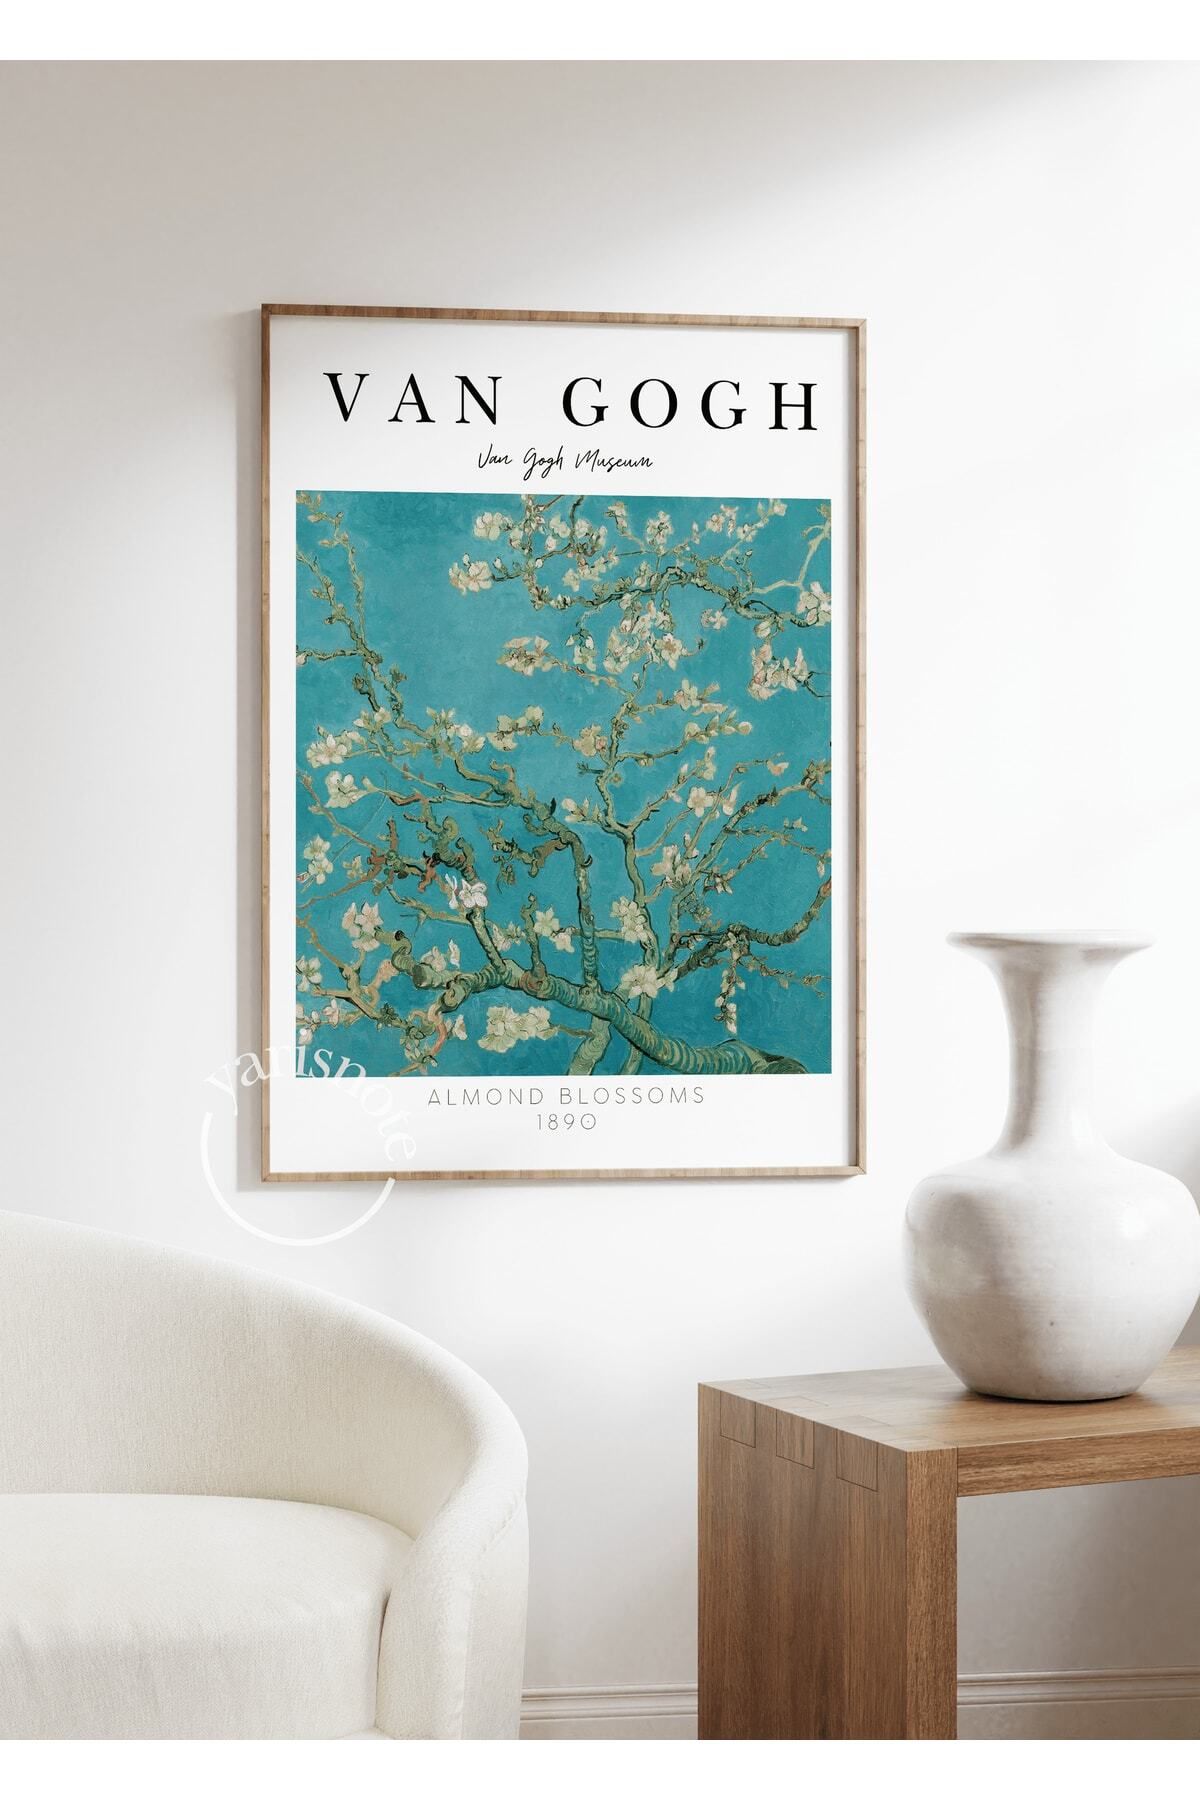 Yaris Note Van Gogh Çerçevesiz Poster Duvar Tablosu Poster Modern Tablo Dekoratif Çerçevesiz Tablo